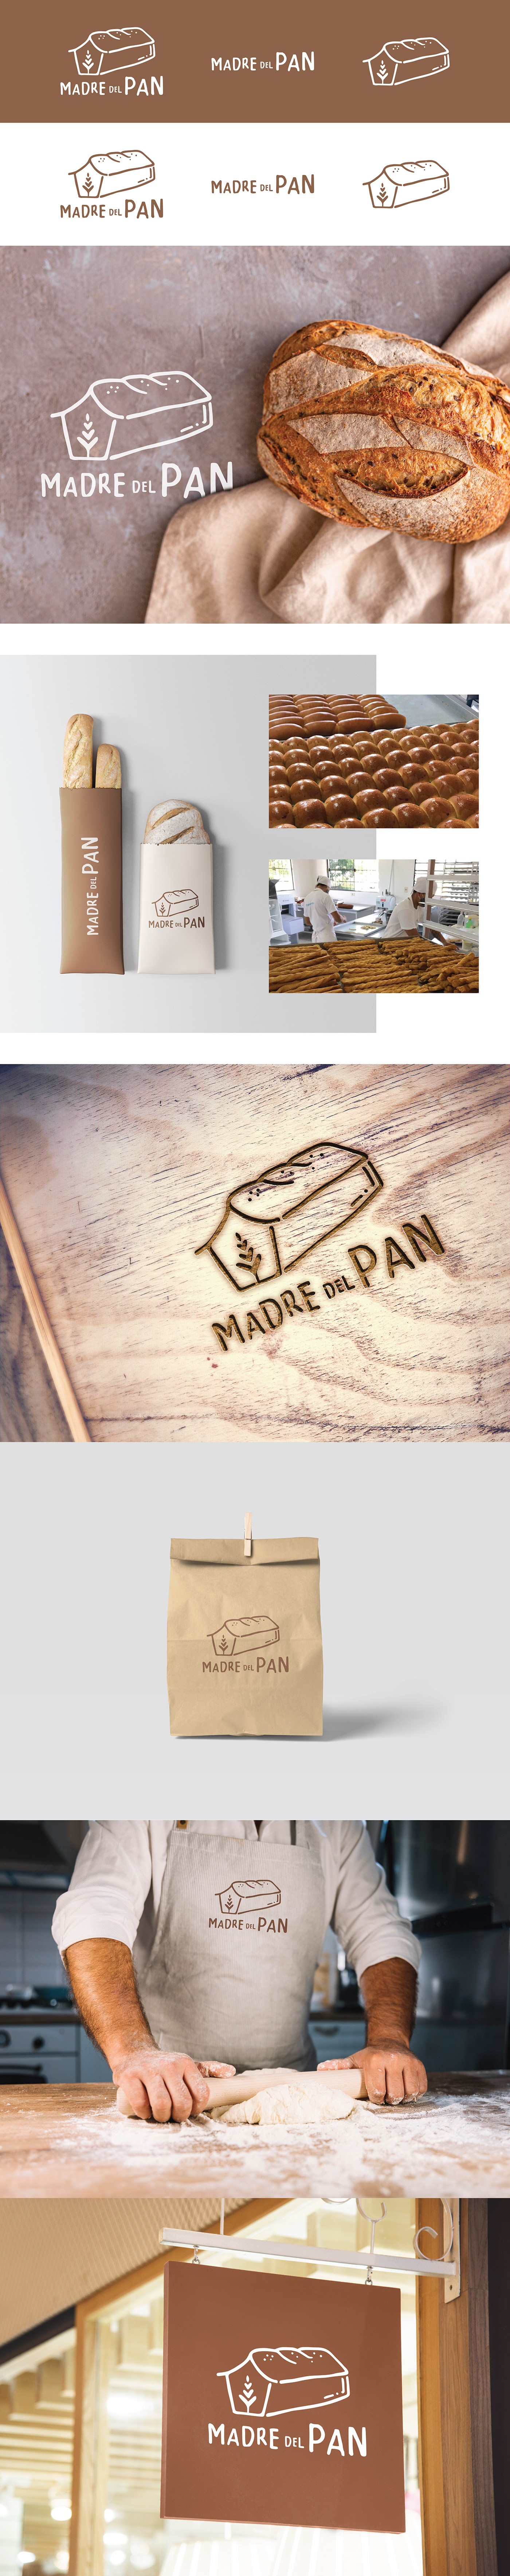 bakery bread Pan panaderia paraguay shoenstatt